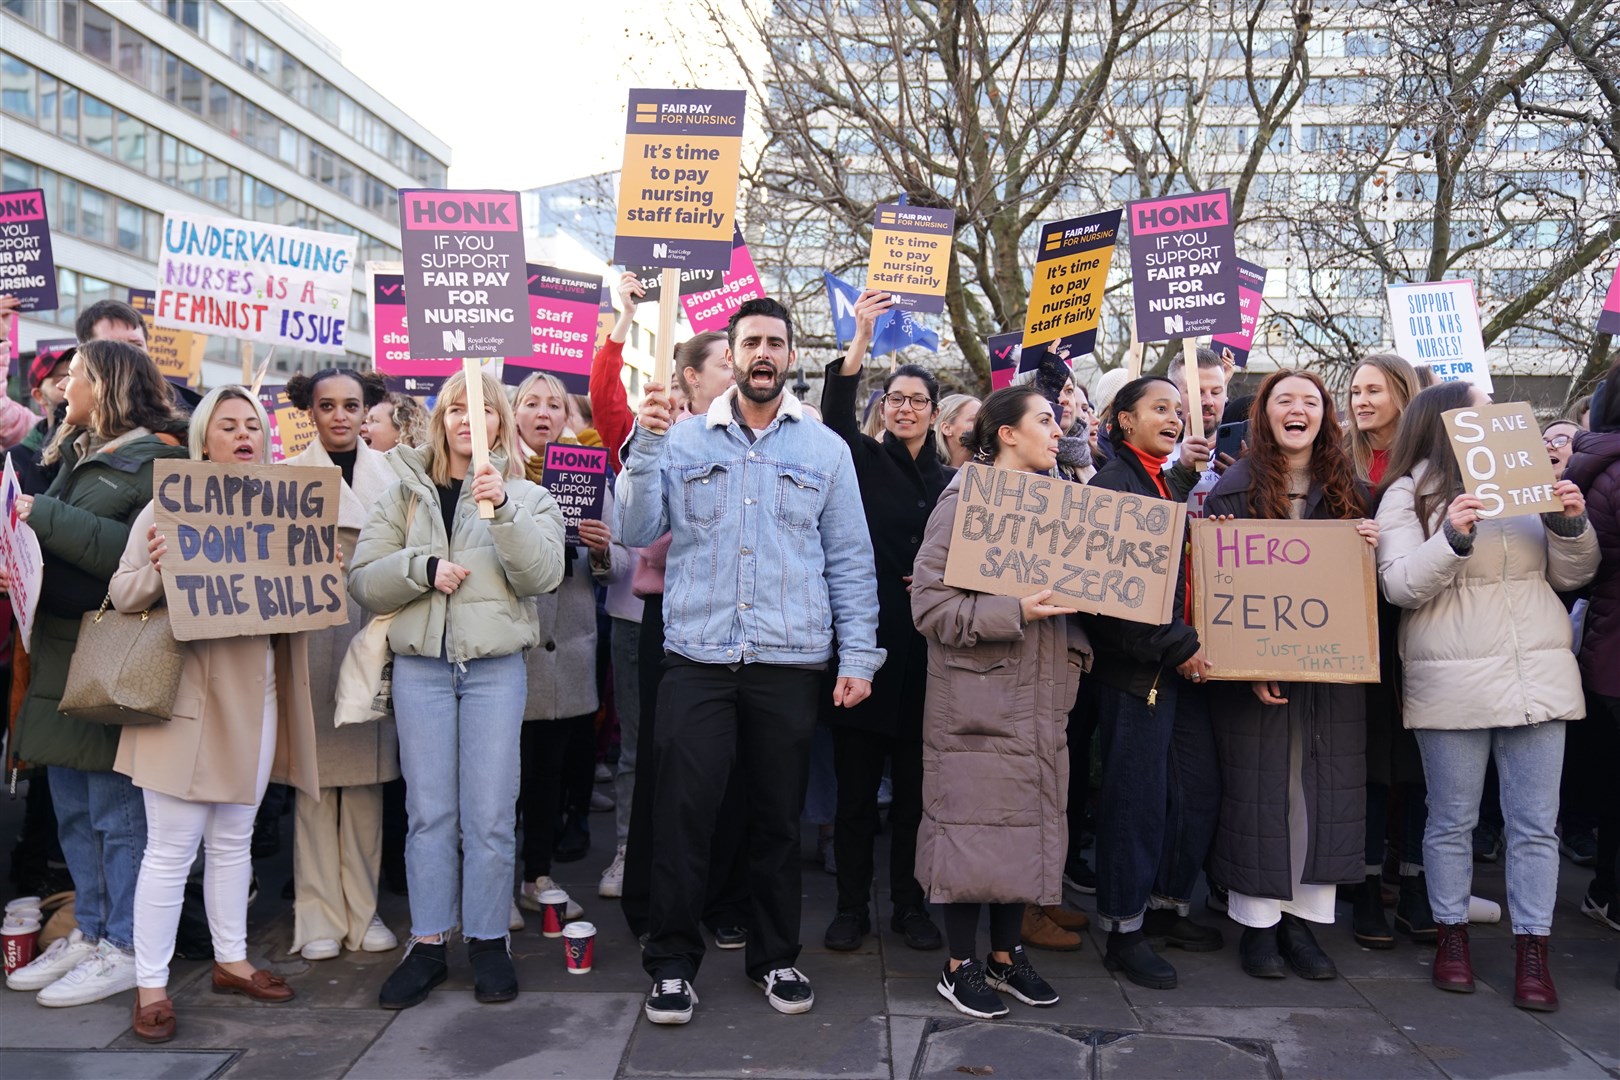 Members of the Royal College of Nursing on strike earlier this week (PA)